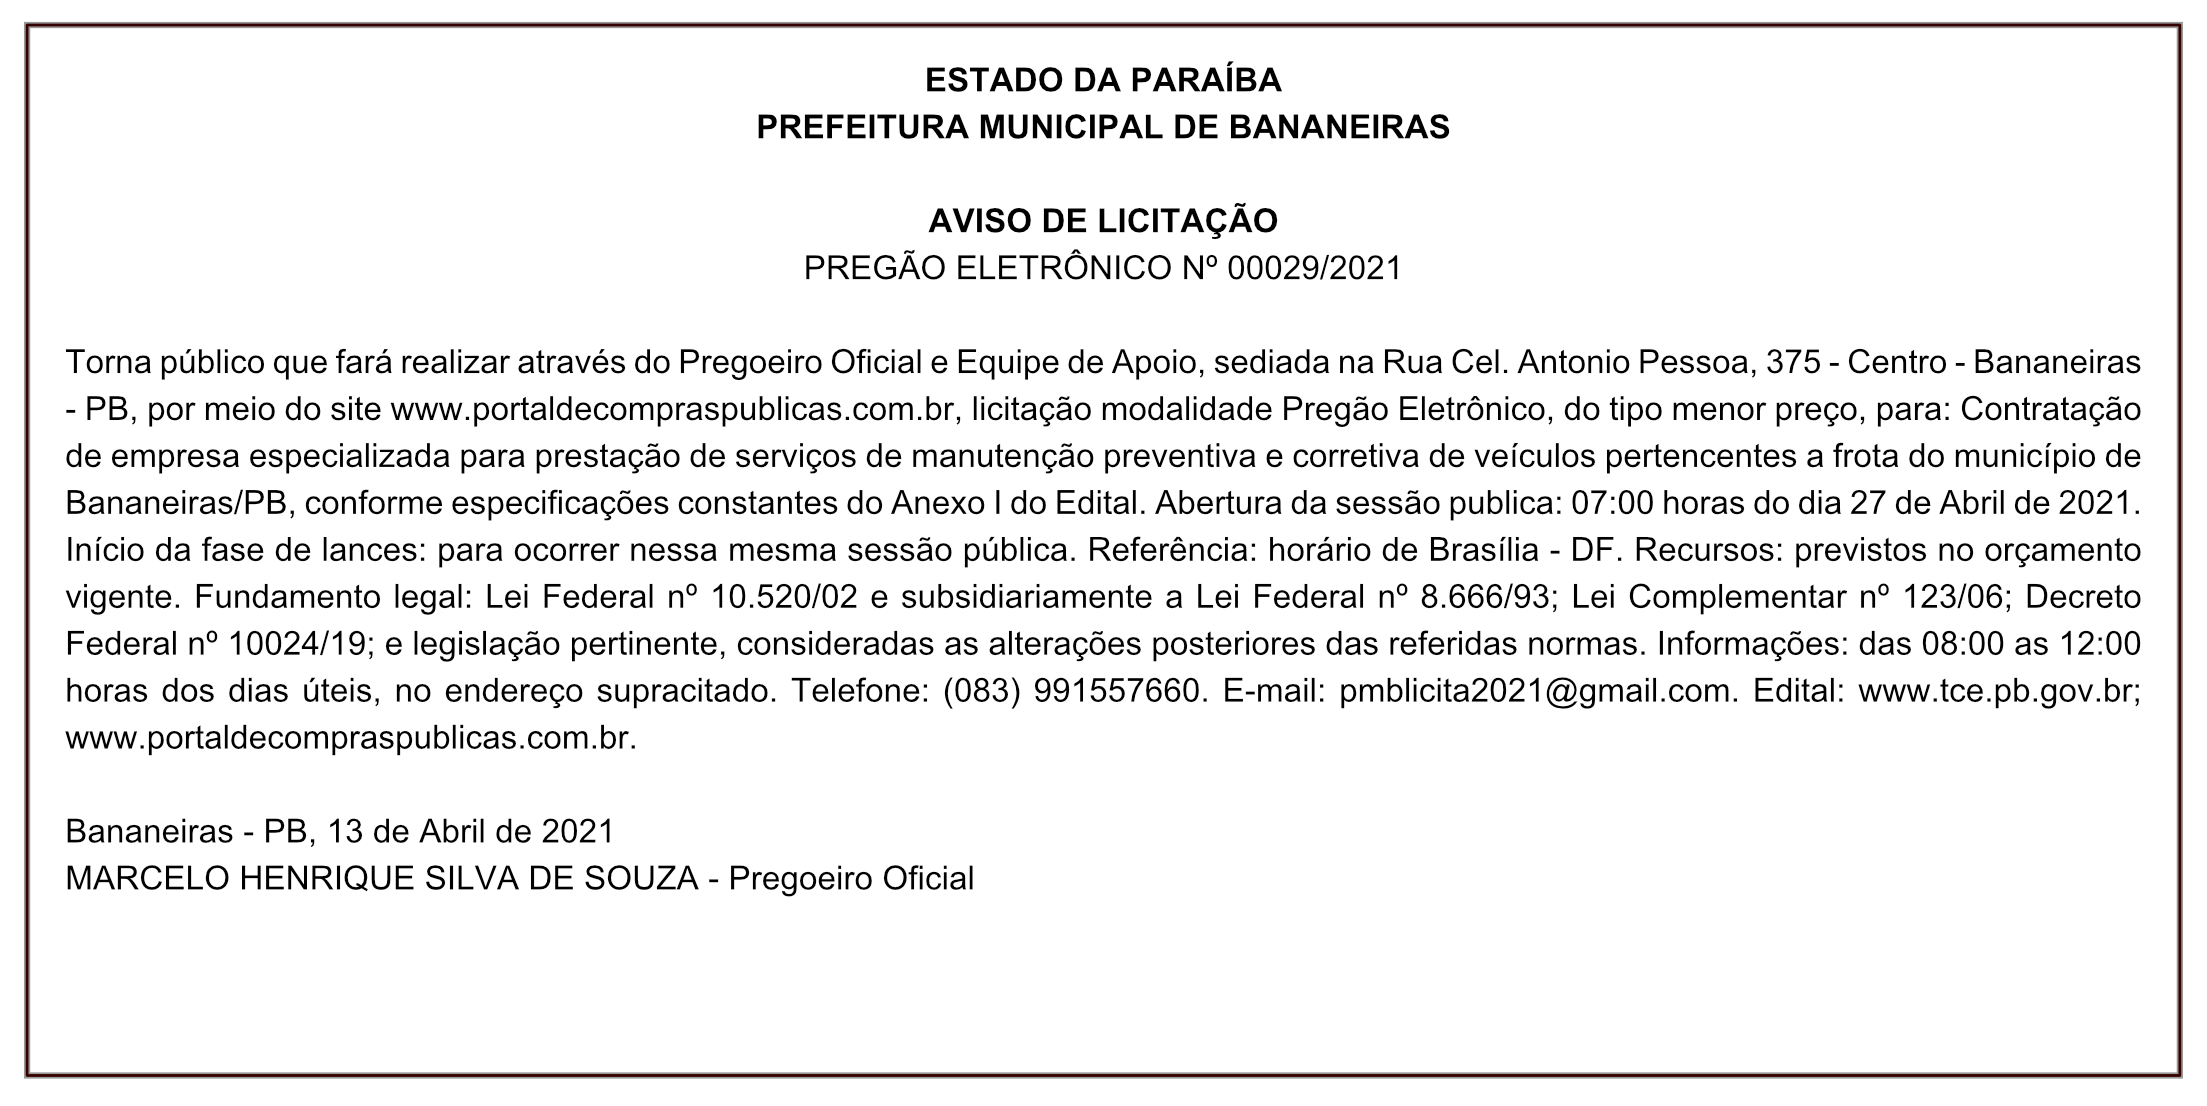 PREFEITURA MUNICIPAL DE BANANEIRAS – AVISO DE LICITAÇÃO – PREGÃO ELETRÔNICO Nº 00029/2021